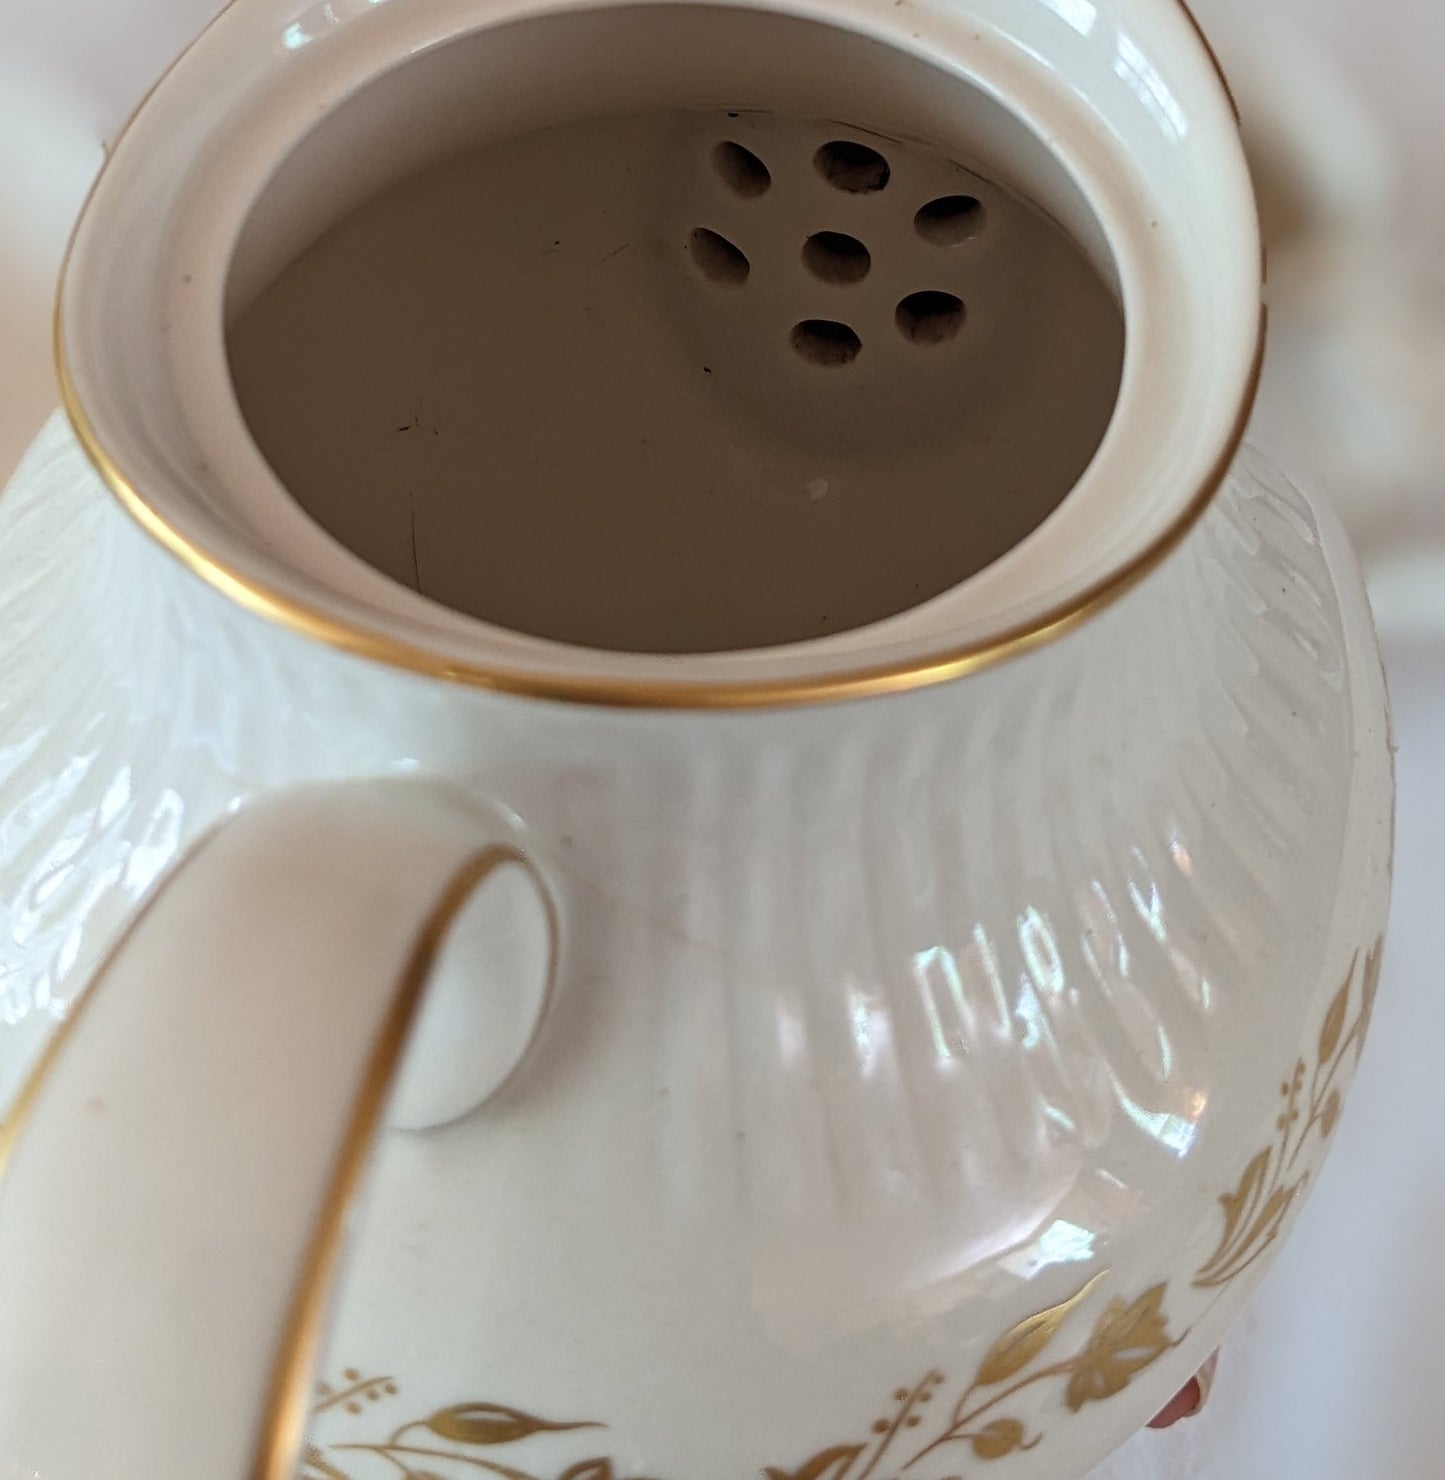 Royal Doulton vintage teapot, creamer, sugar bowl pattern TC 1006